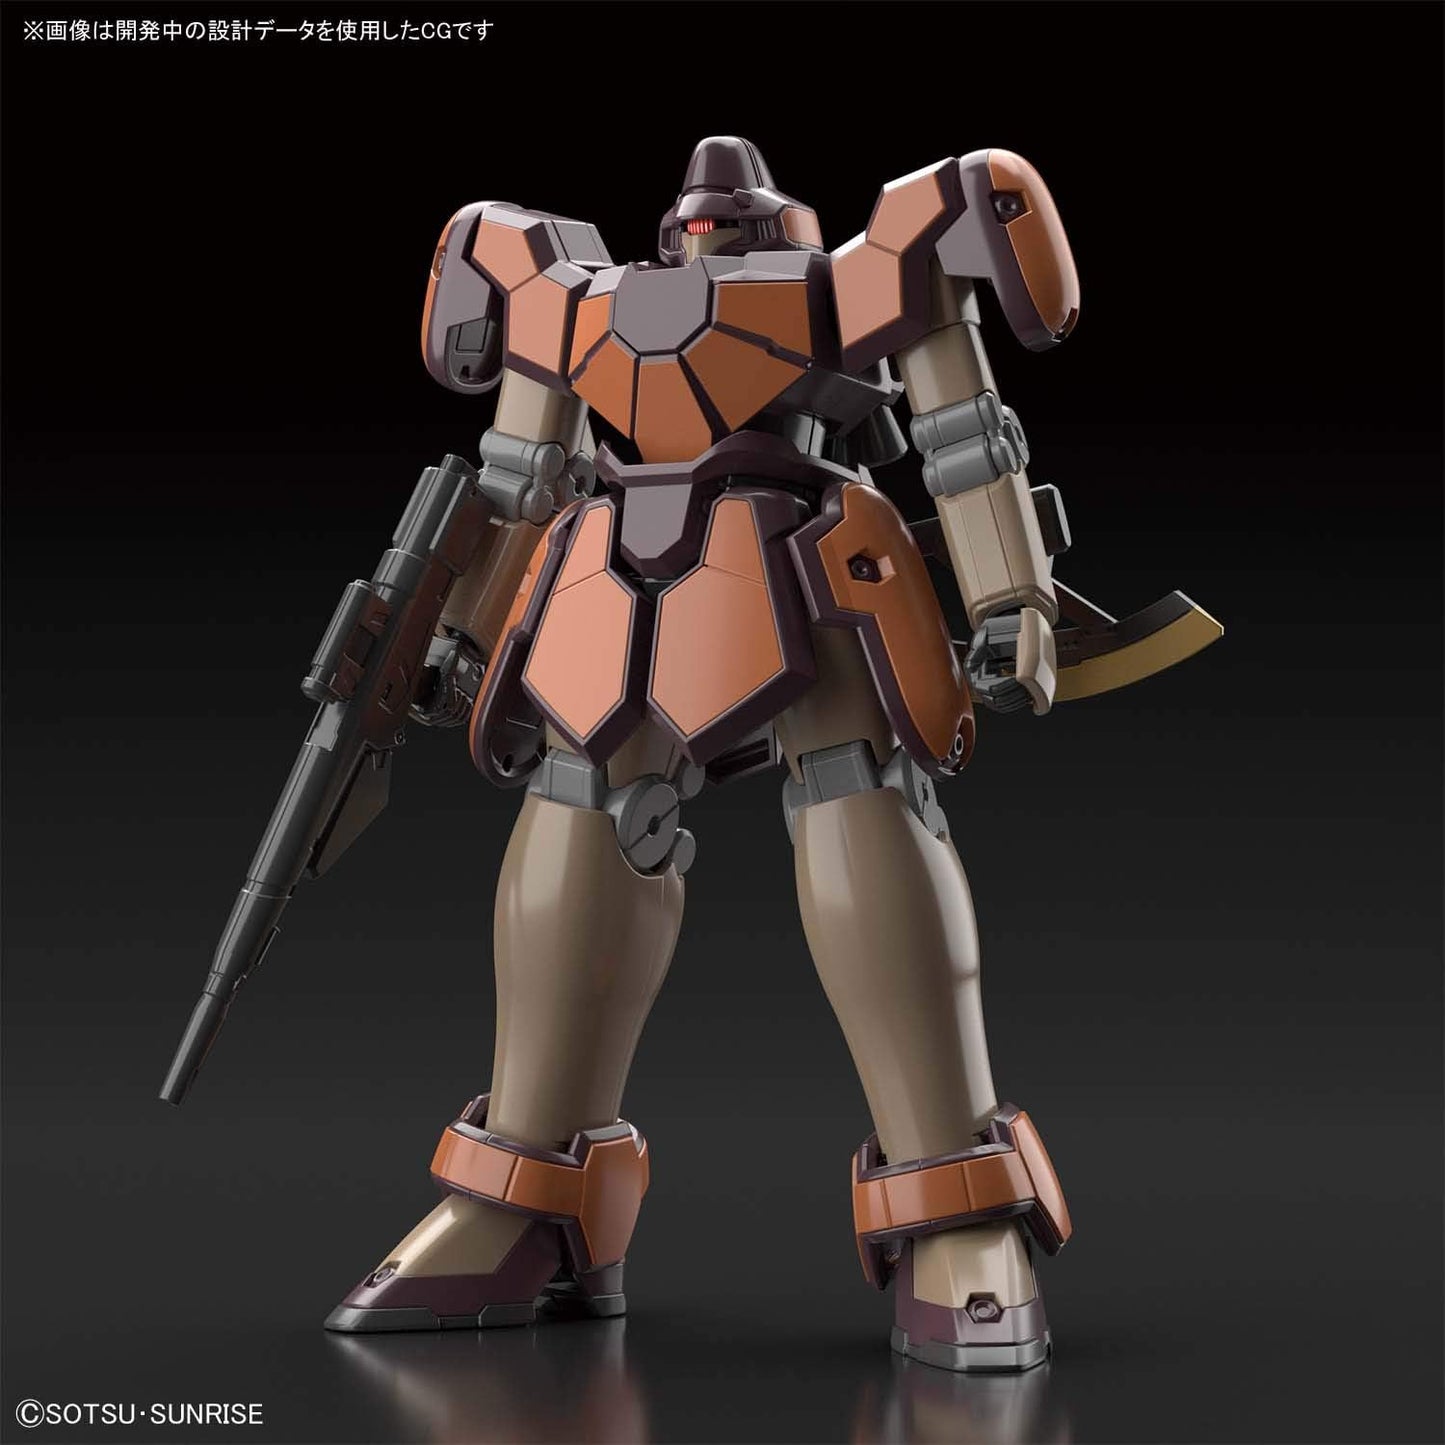 1/144 HGAC "Mobile Suit Gundam Wing" Maguanac | animota